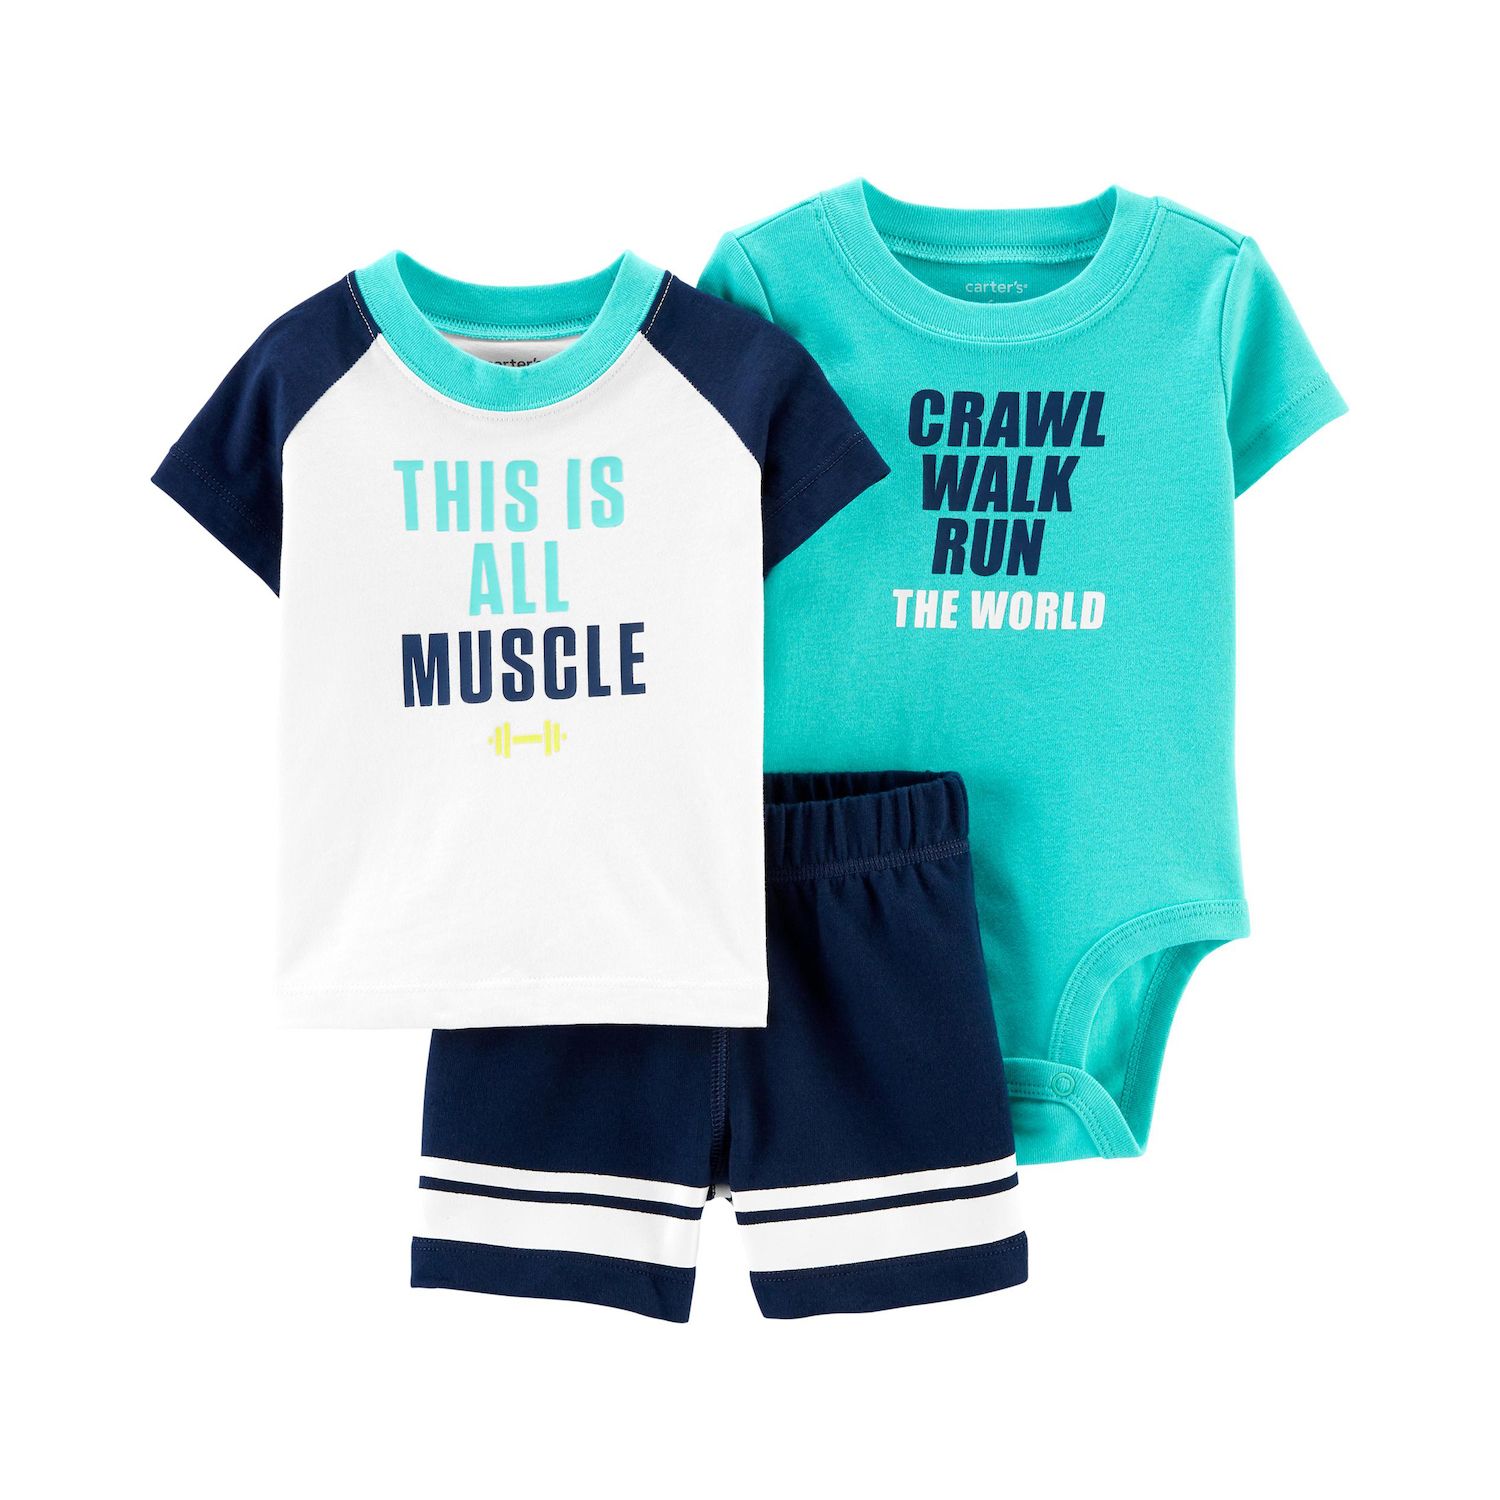 carter's babies clothes